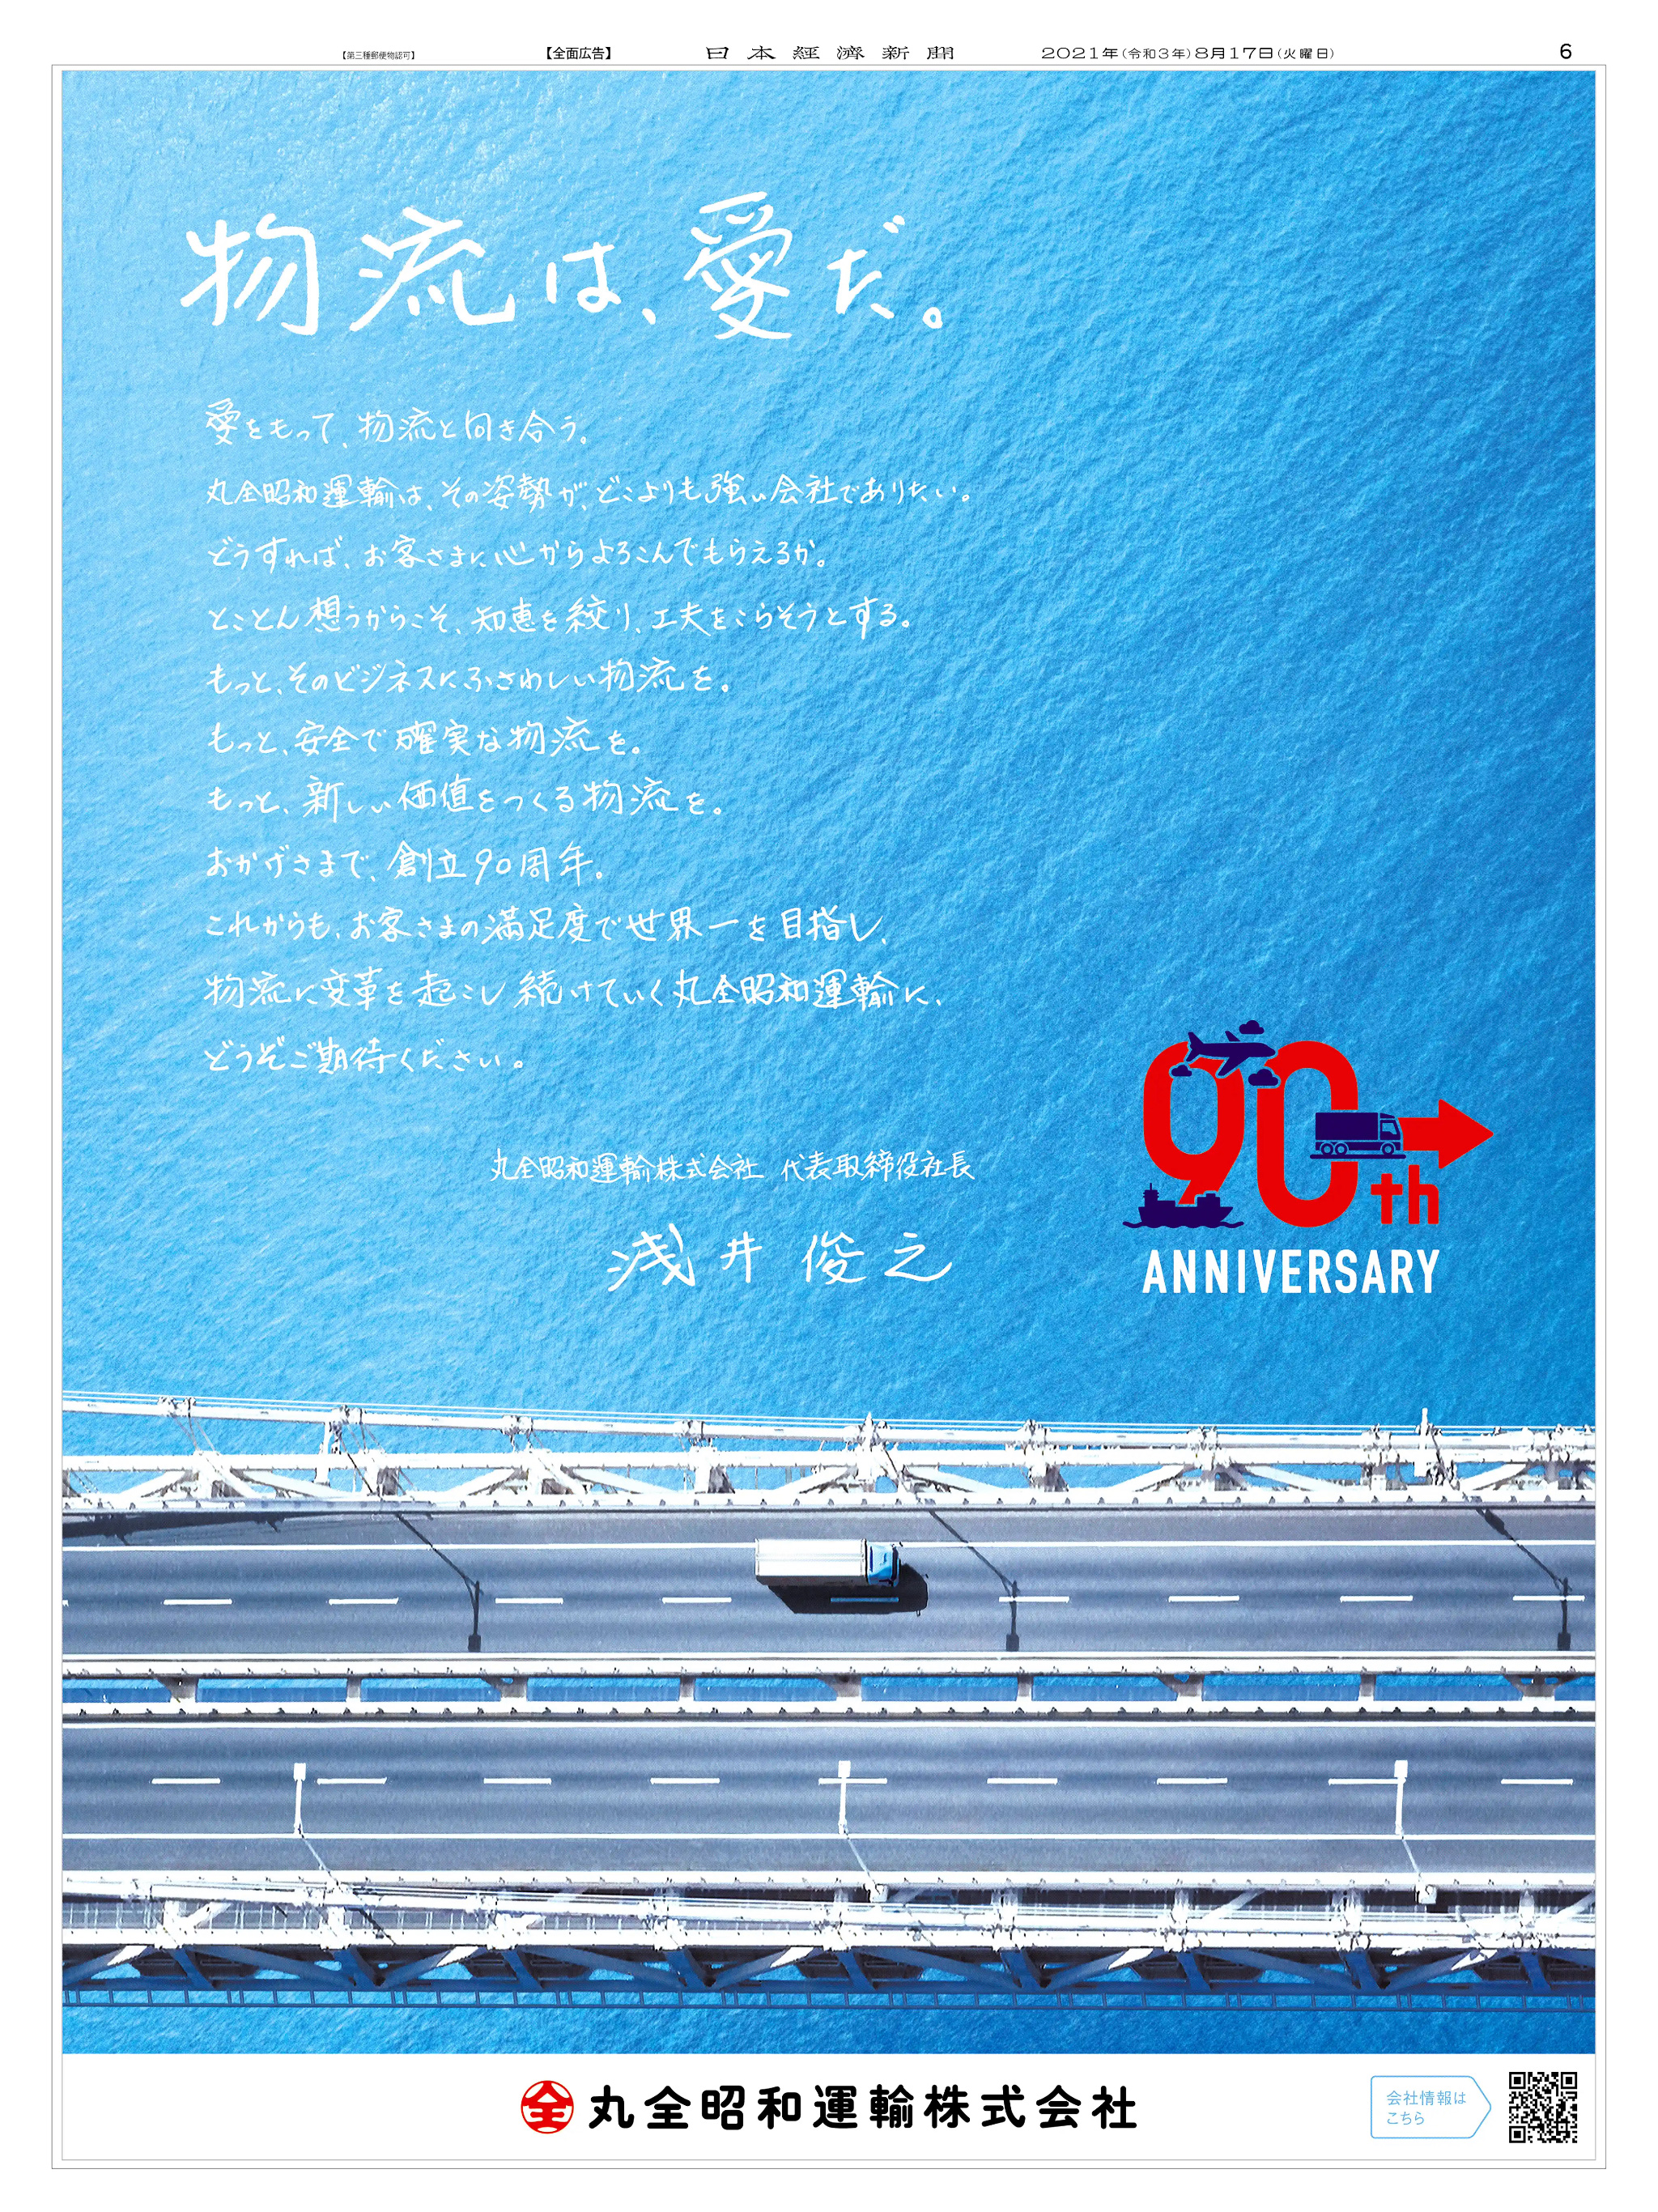 周年記念広告事例 「丸全昭和運輸 創立90周年」